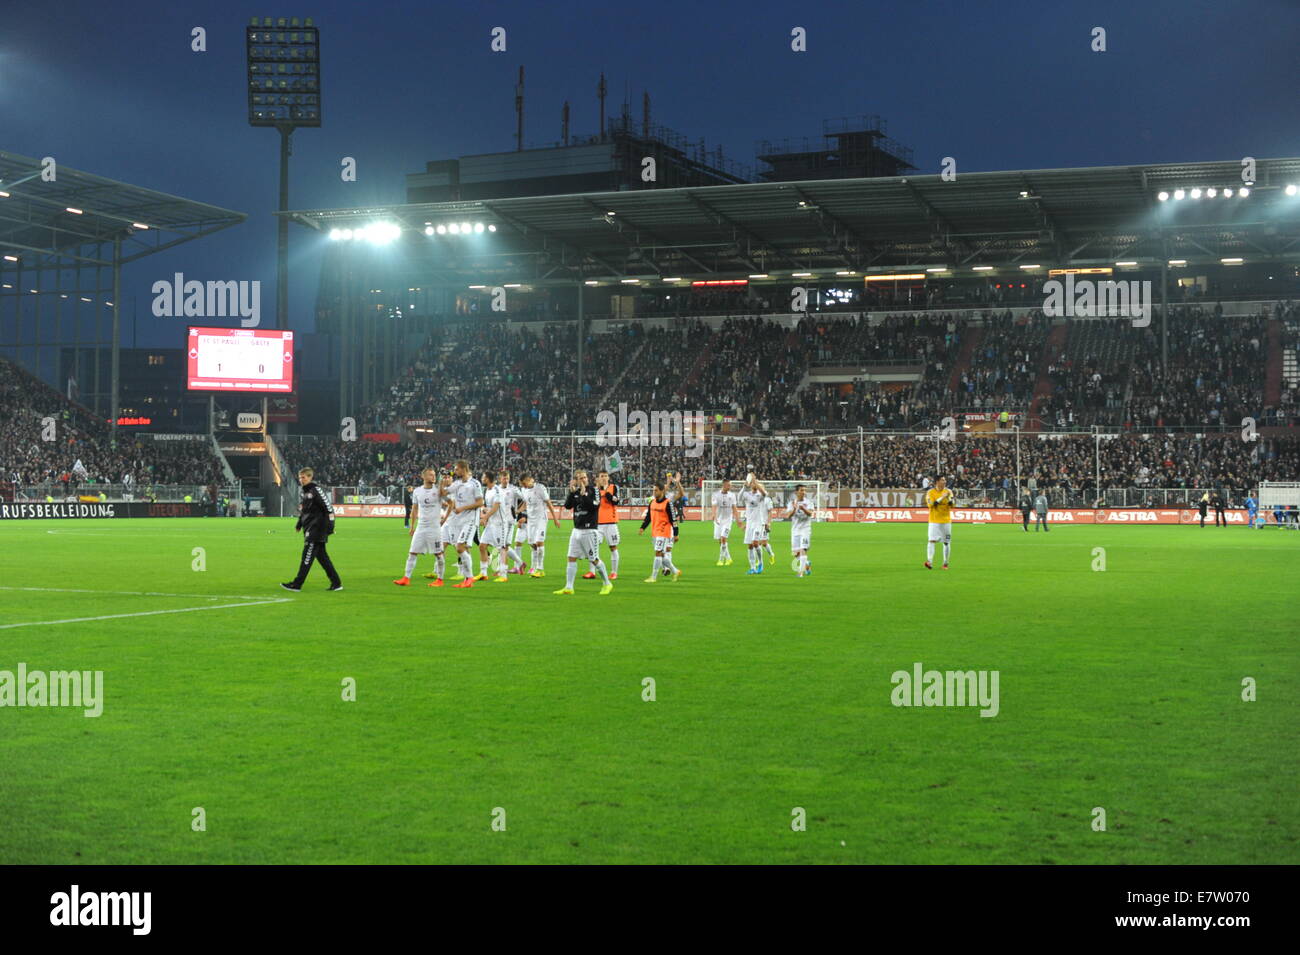 FC St Pauli vs. Eintracht Braunschweig, Millerntor-Stadion, Amburgo, Deutschland. Solo uso editoriale. Foto Stock